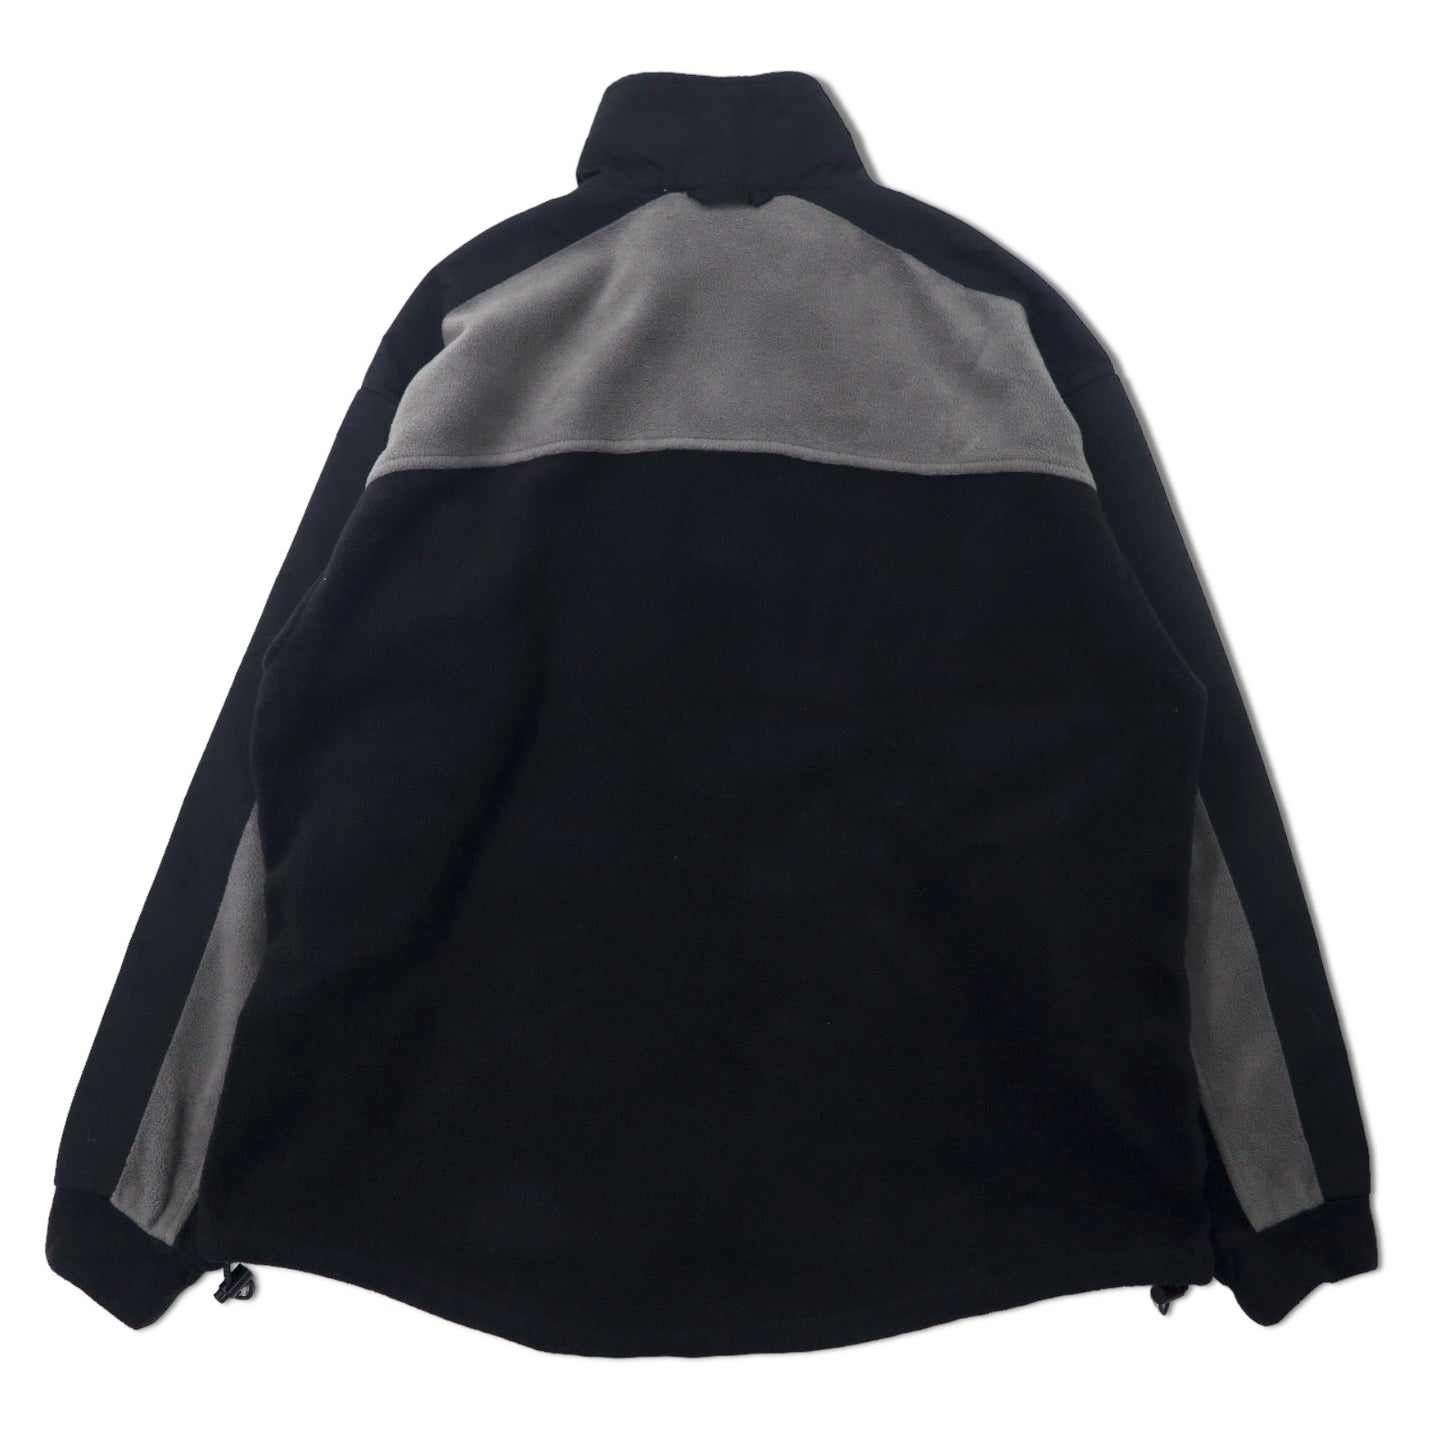 Columbia 90年代 ナイロン切り替え フルジップ フリースジャケット L ブラック ポリエステル ワンポイントロゴ刺繍 ビッグサイズ XM7313